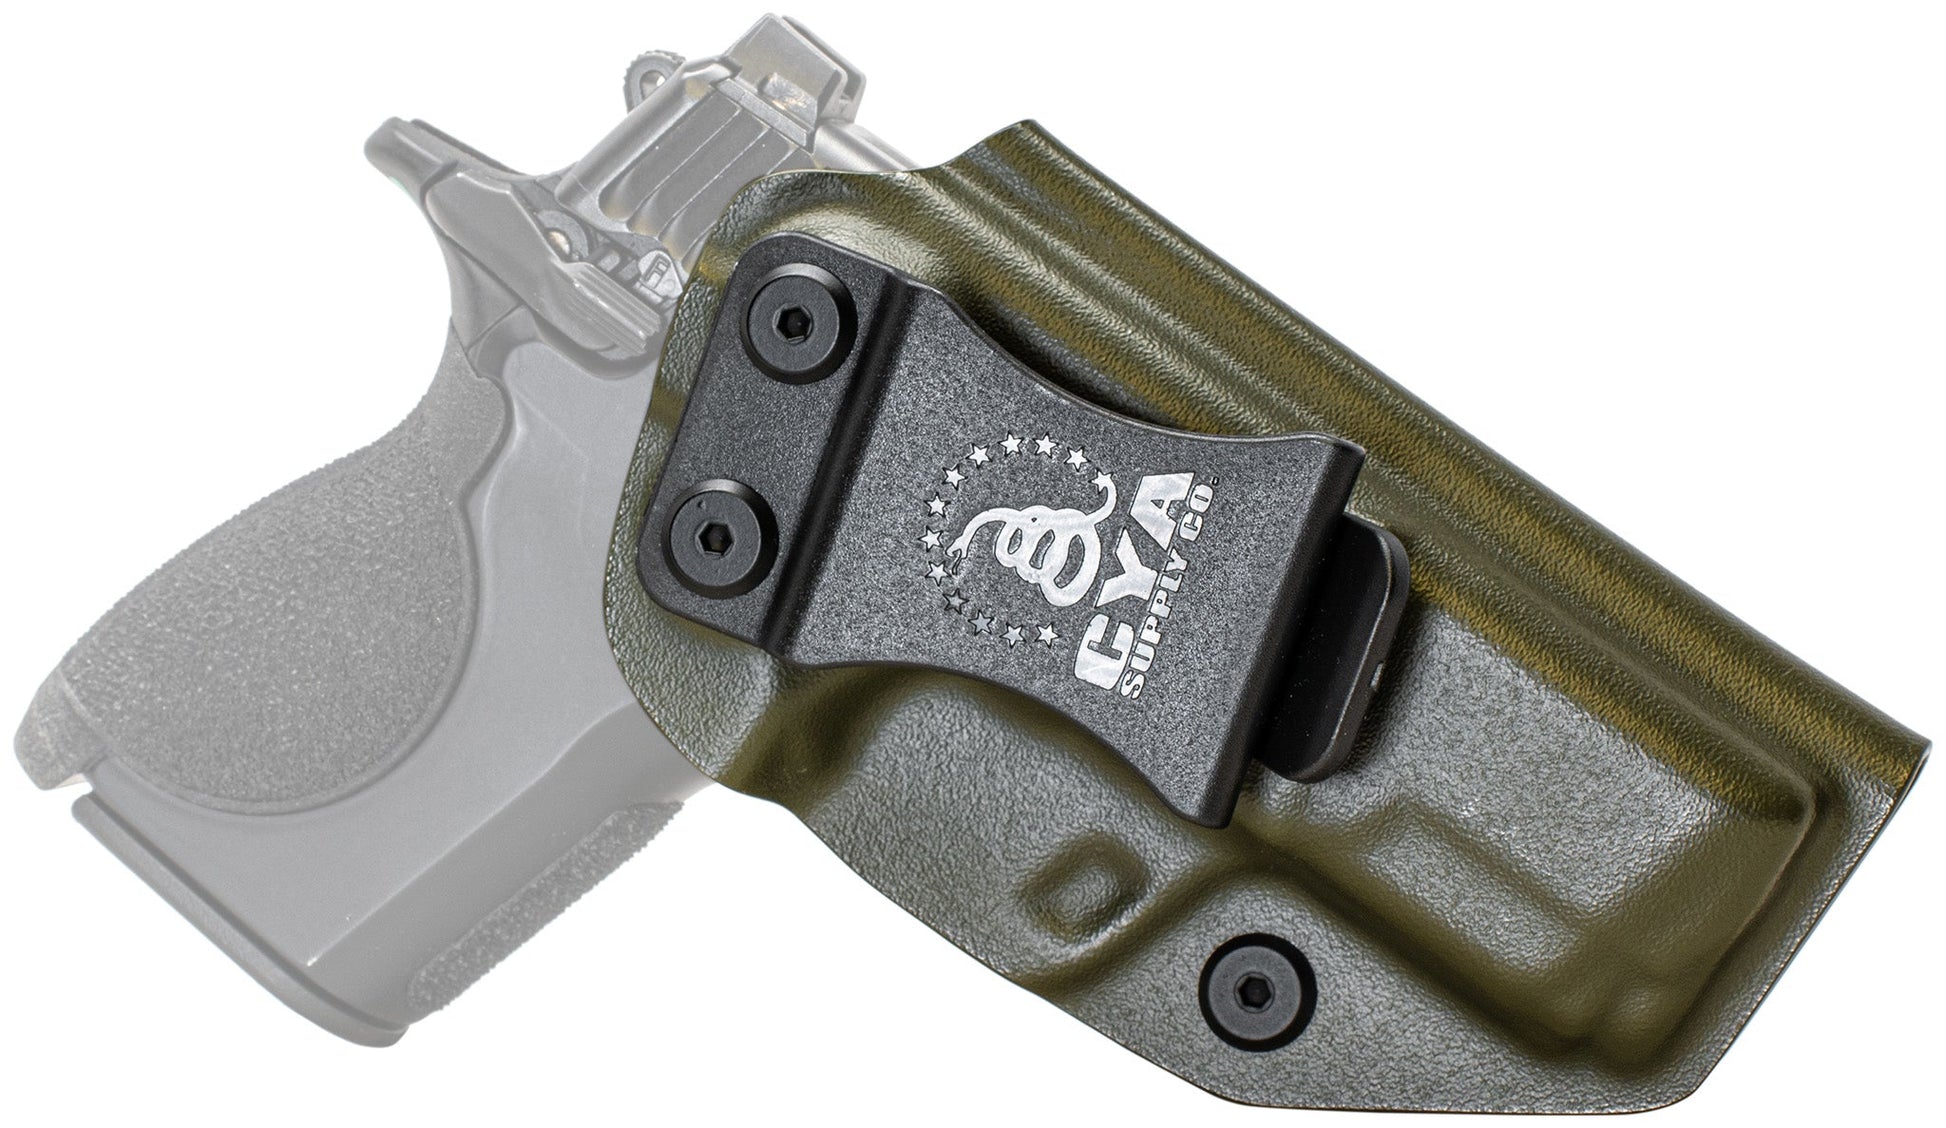 Smith & Wesson CSX Holster | Base IWB | CYA Supply Co. CYA Supply Co.